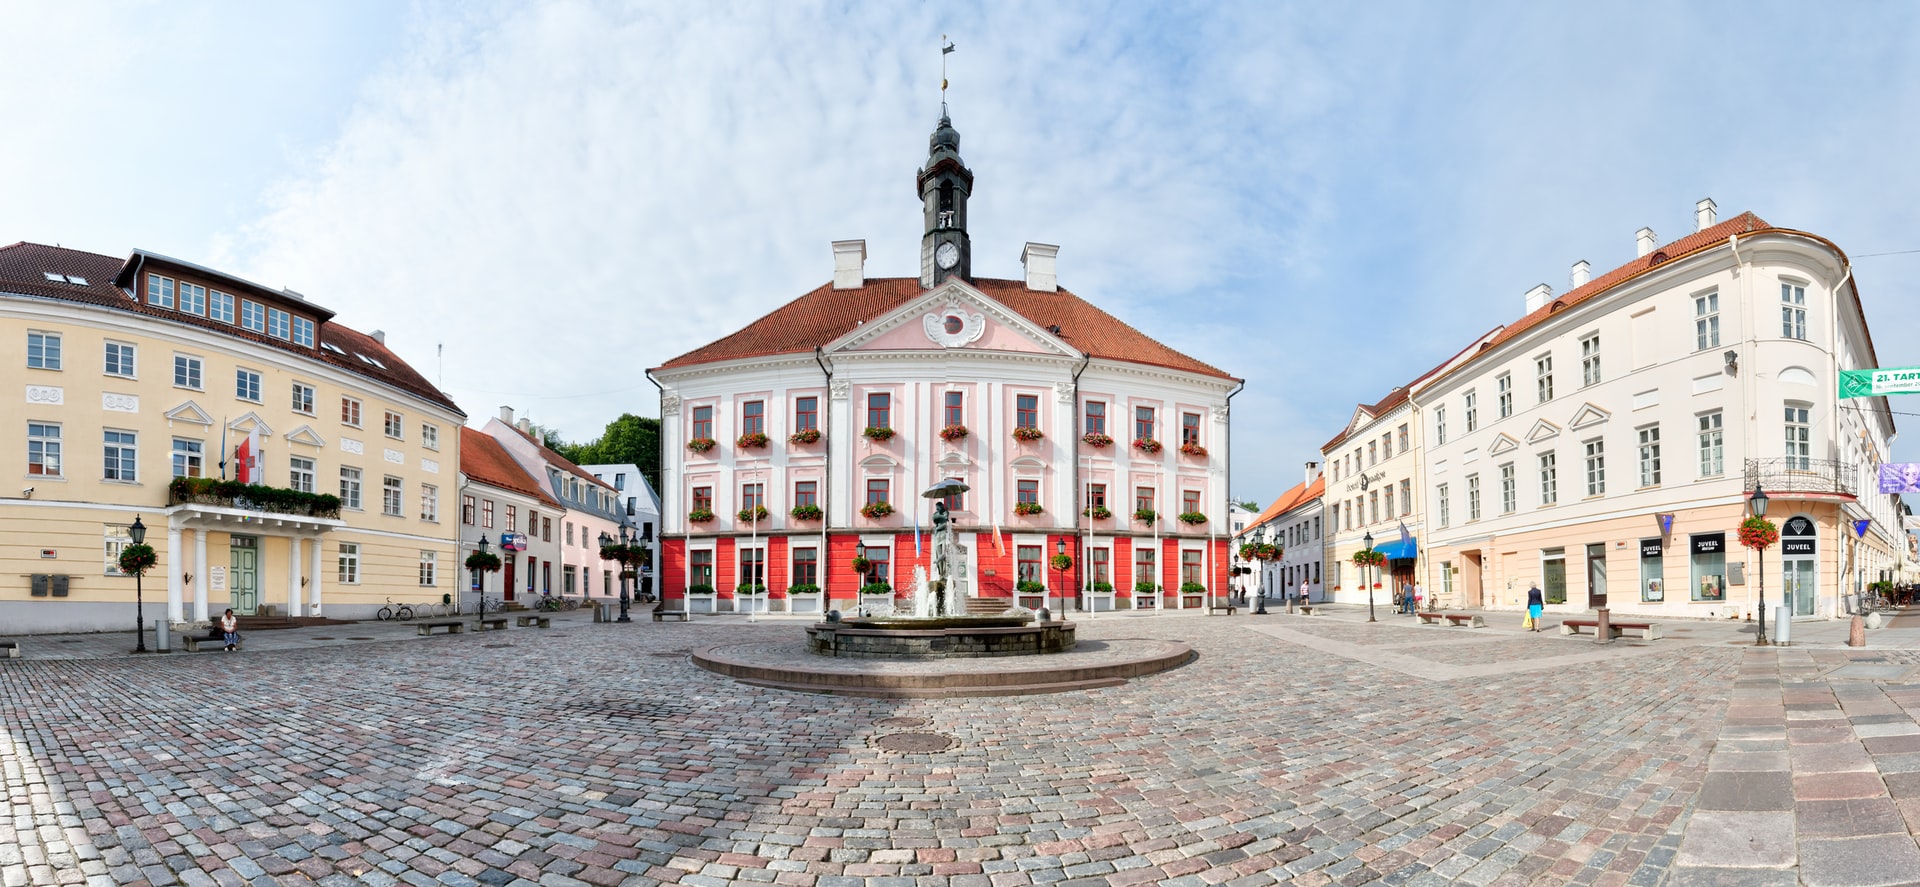 Тарту, Эстония. Фото Jacques Bopp по лицензии Unsplash